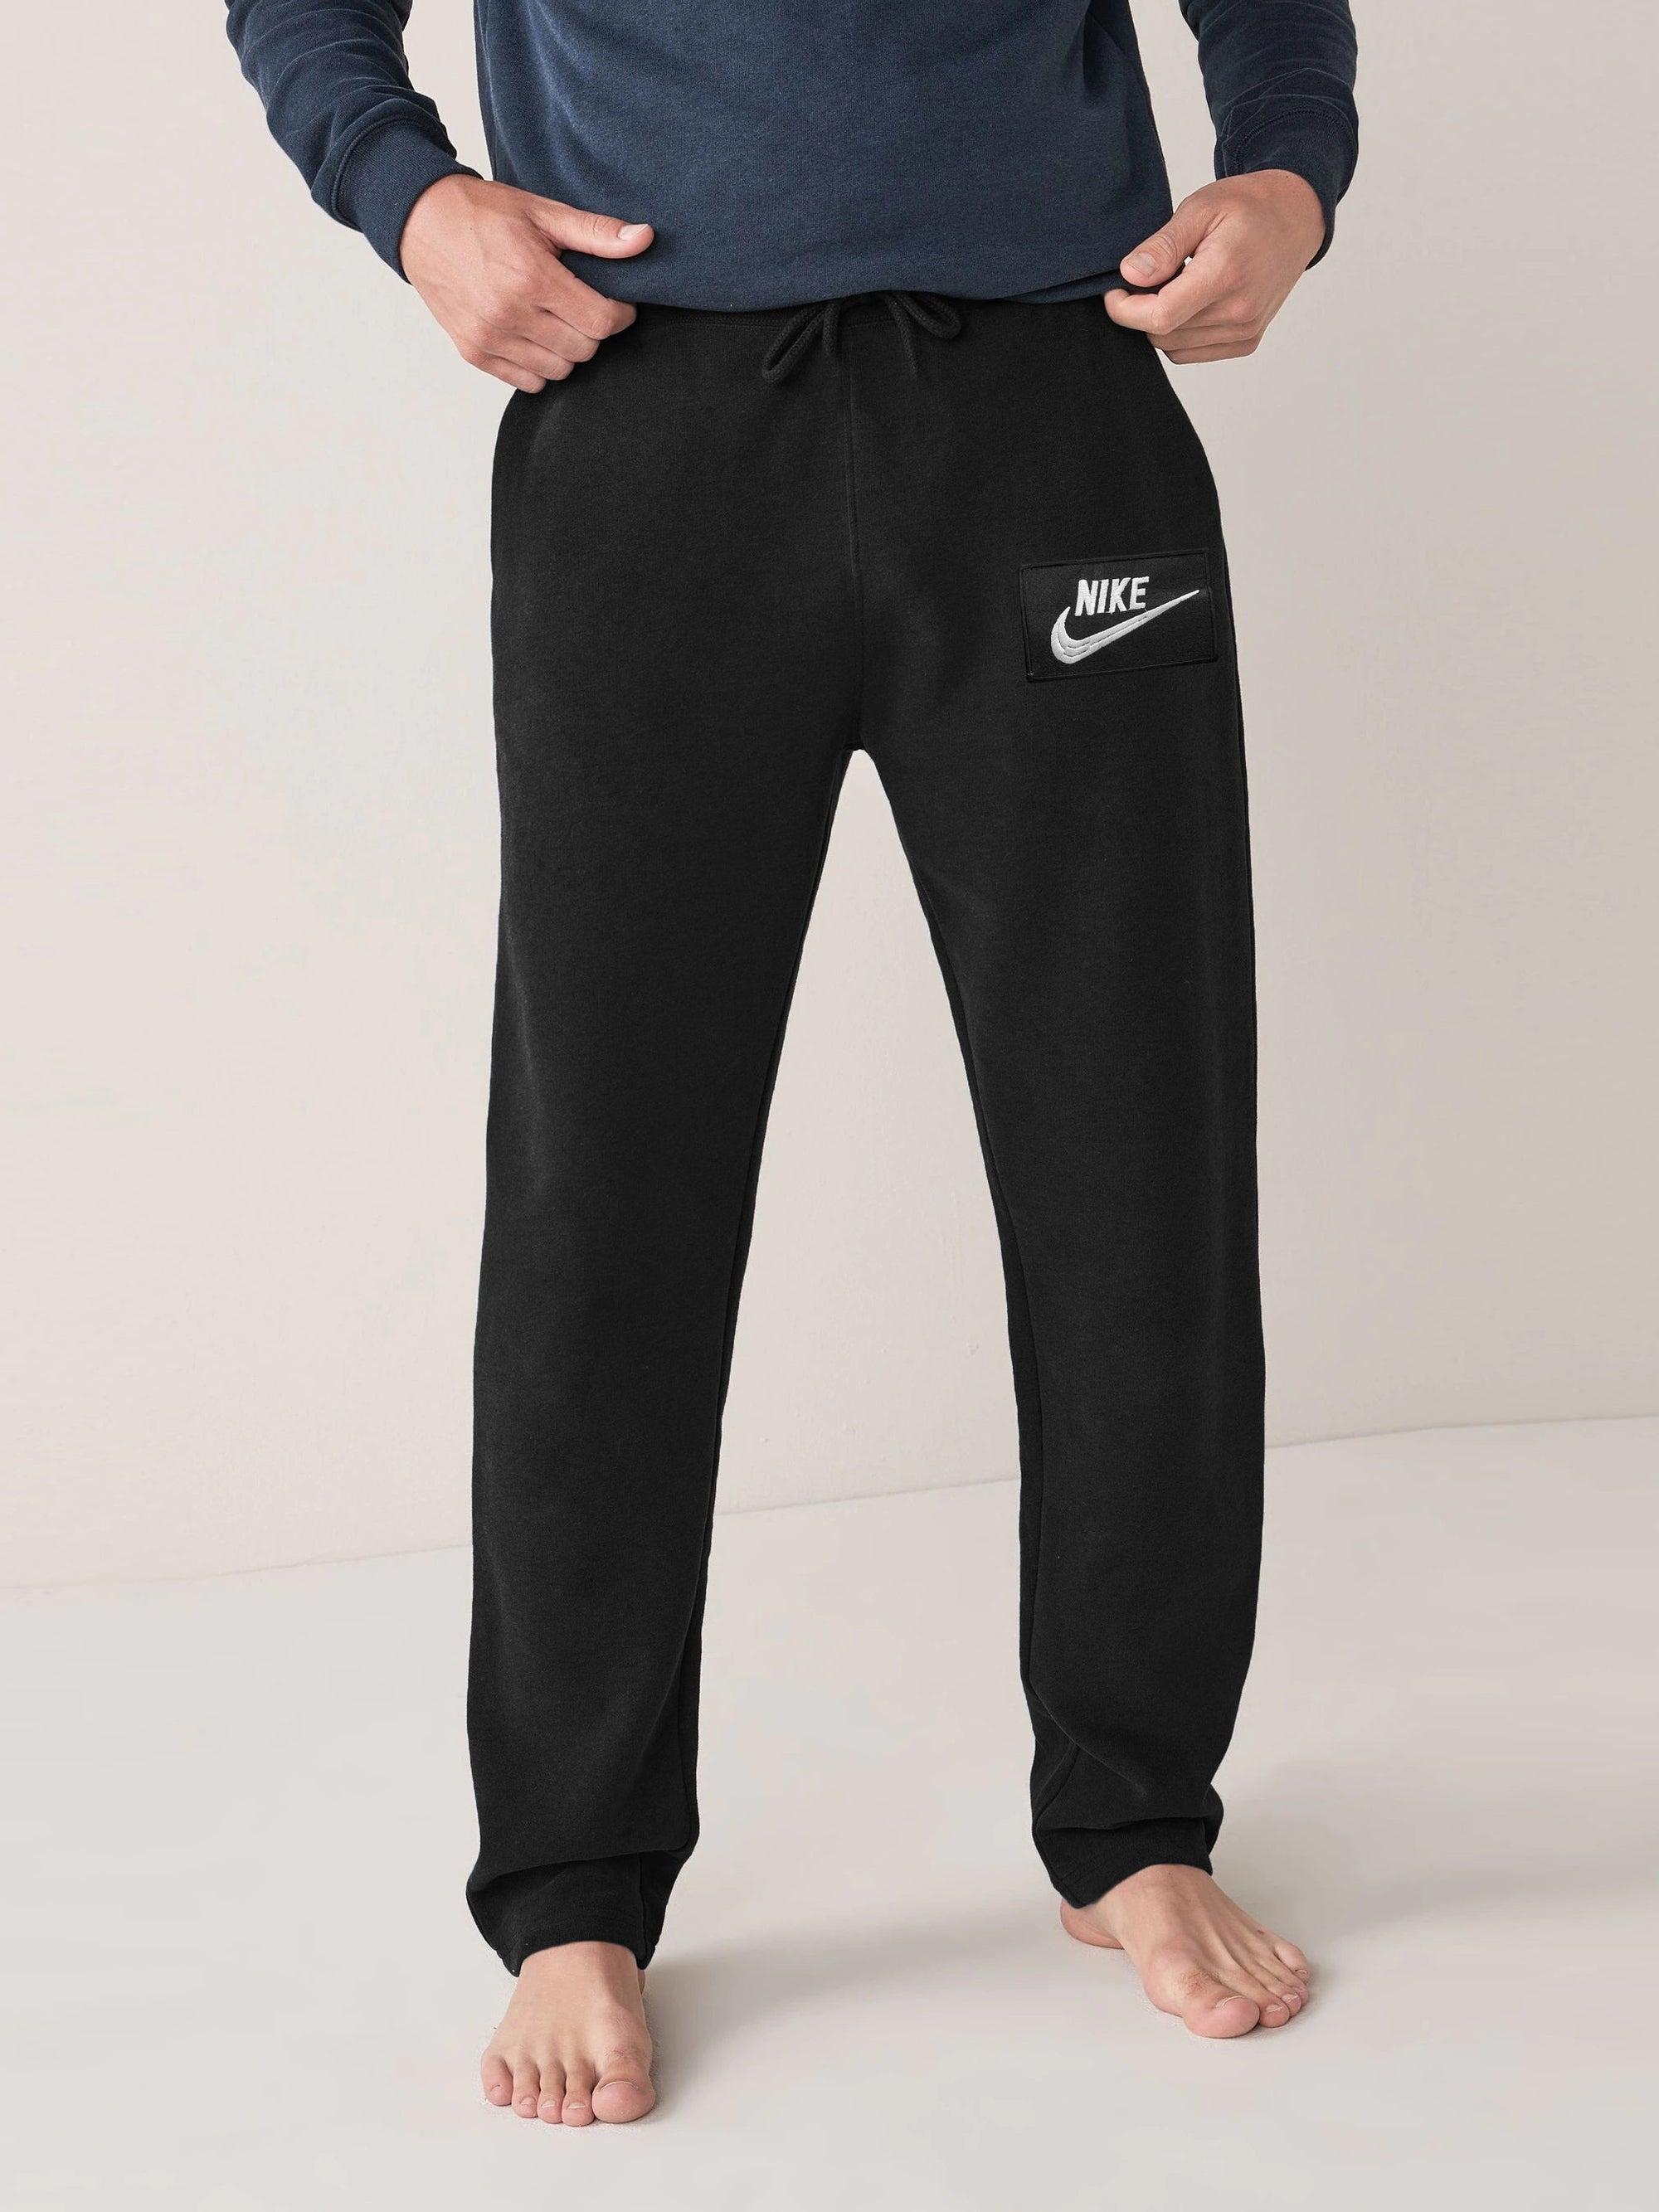 NK Fleece Regular Fit Trouser For Men-Black-RT1666